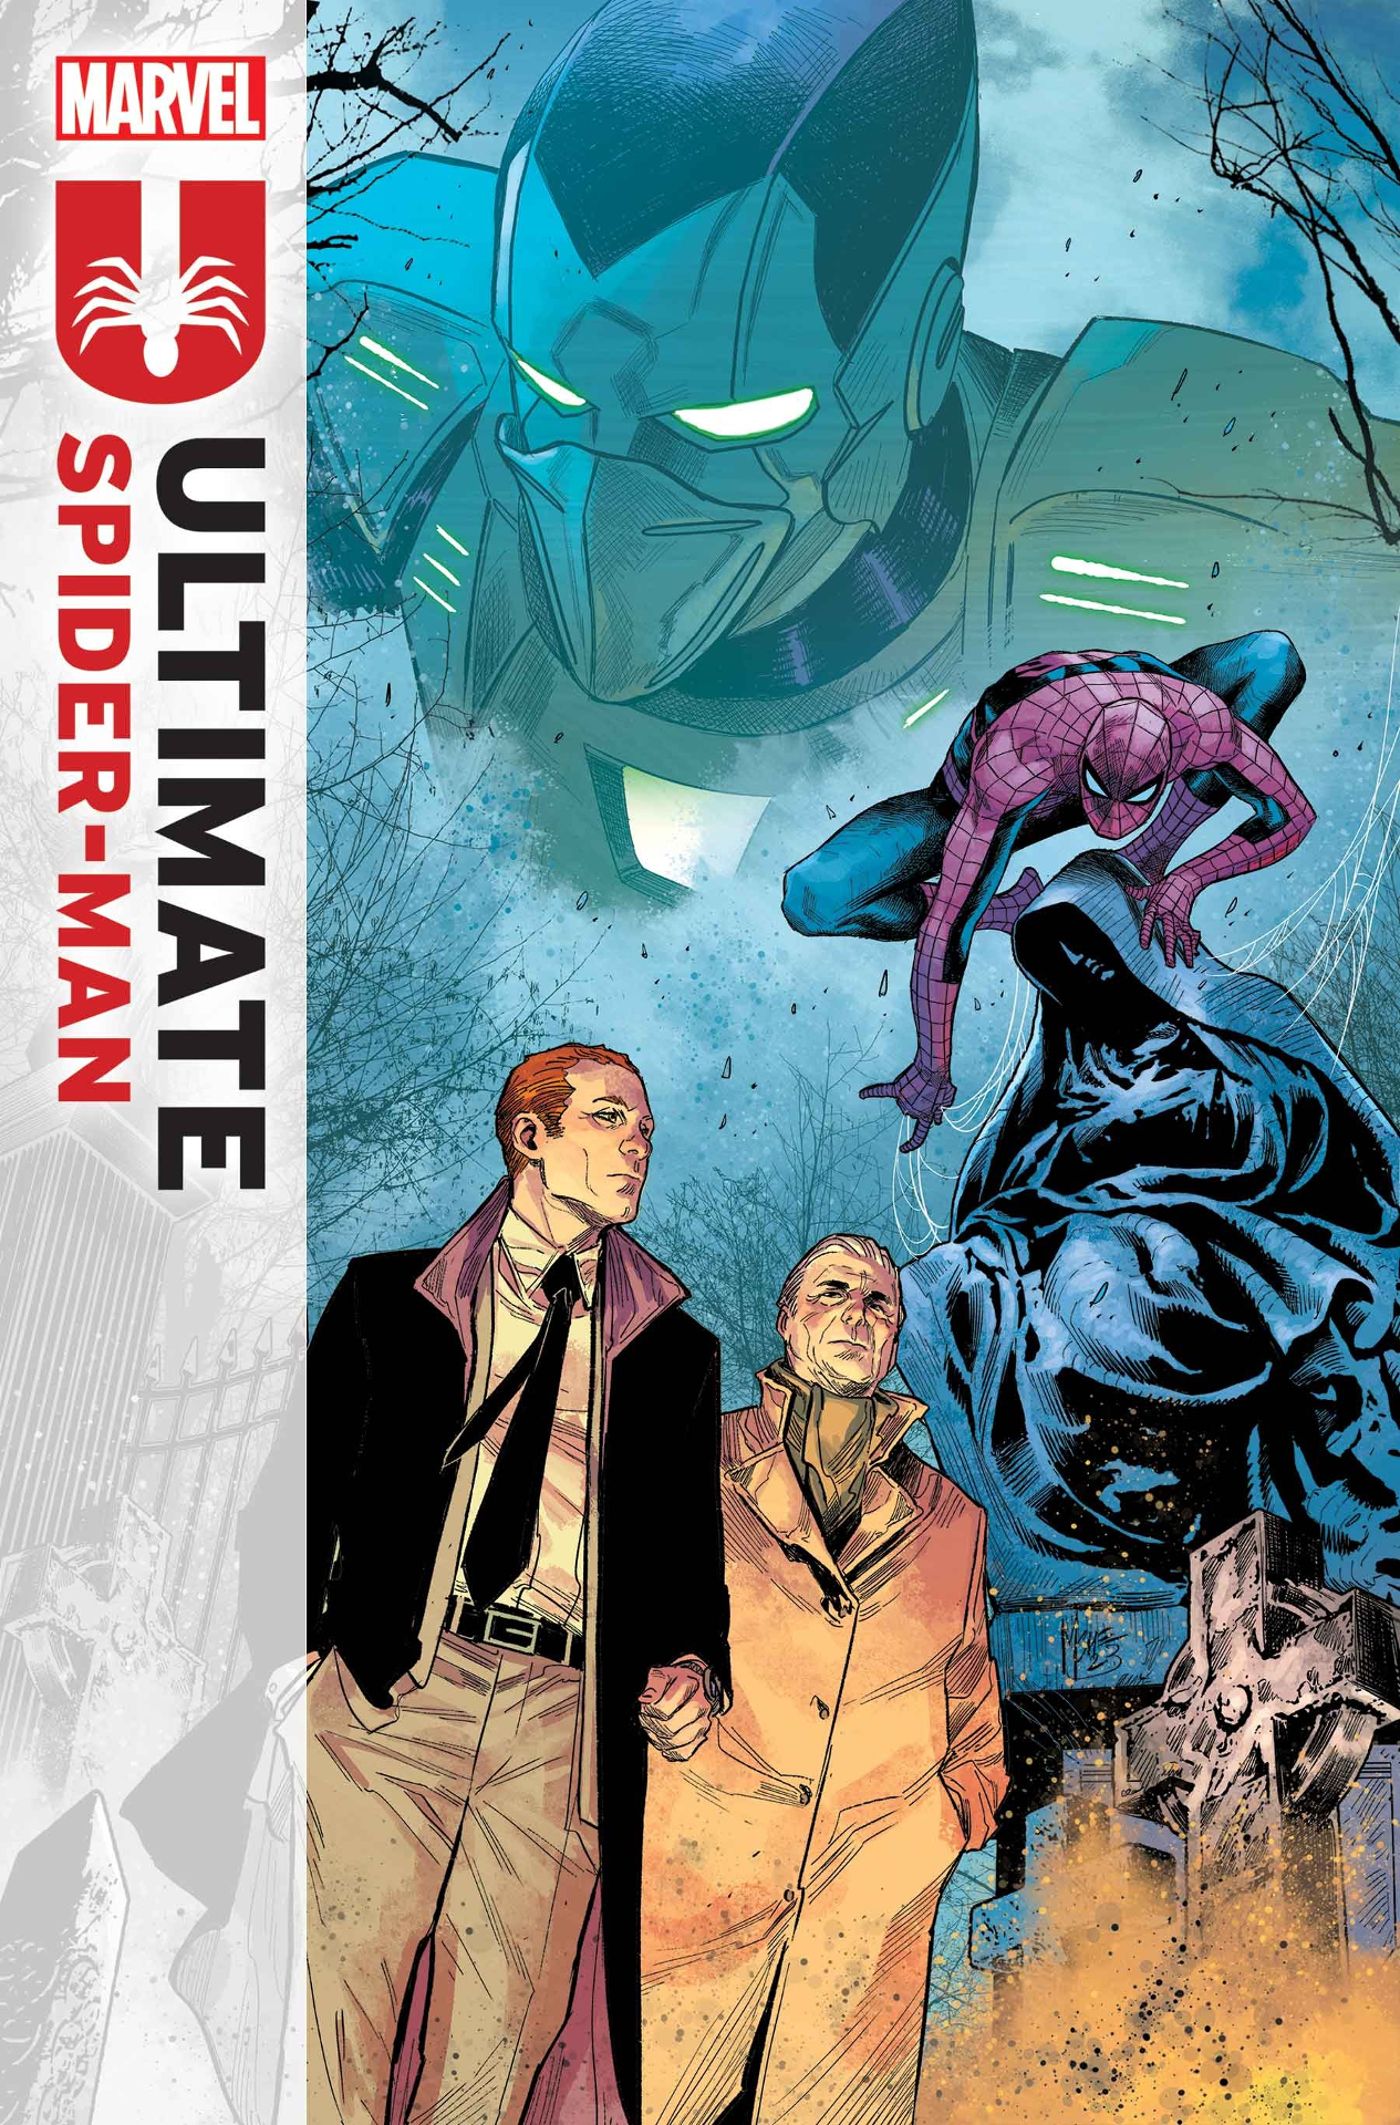 Arte da capa do Ultimate Spider-Man #5